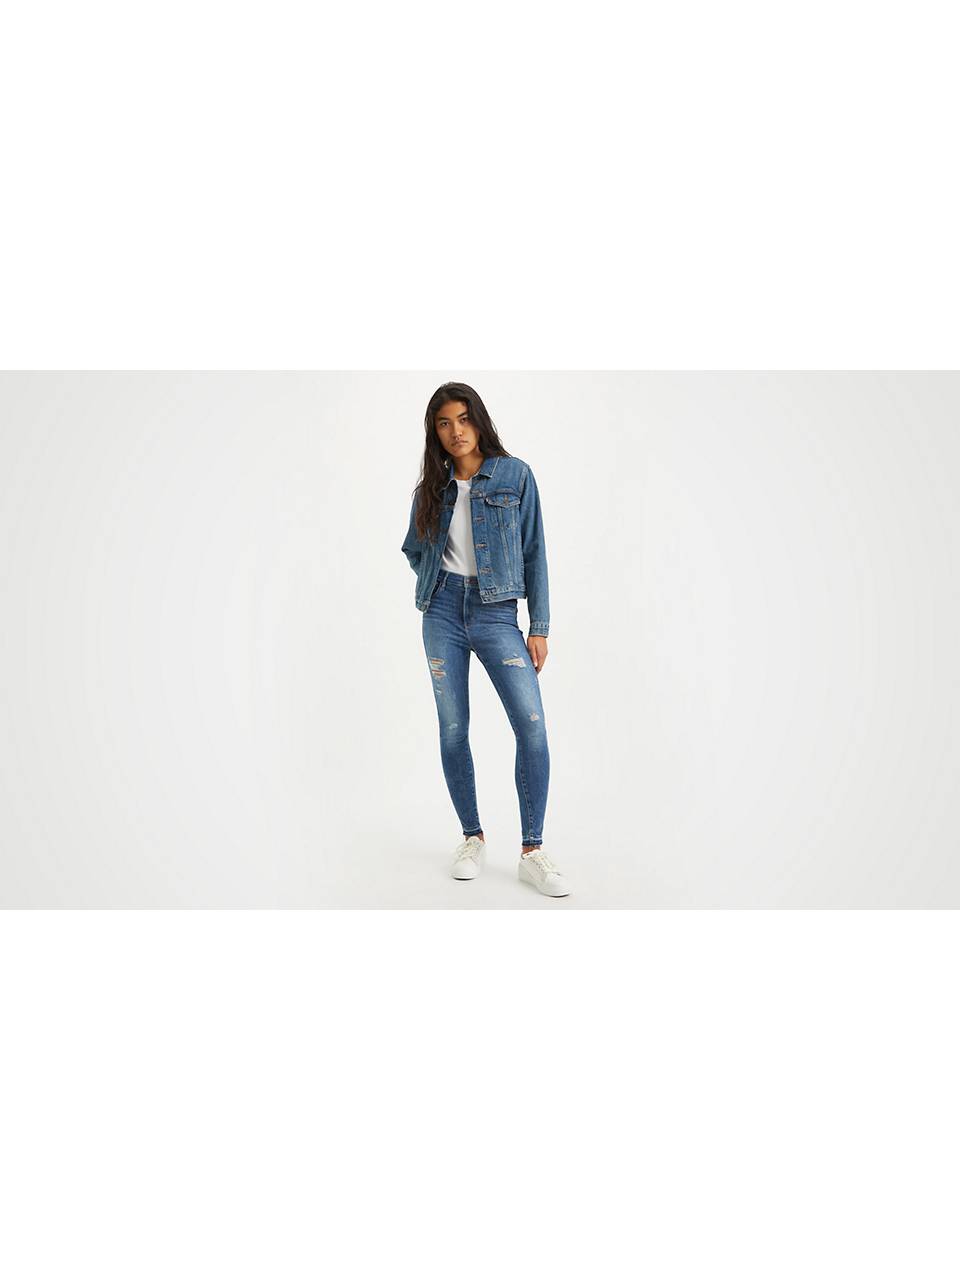 Women's Jeans Sale: Shop Discount Women's Jeans Styles | Levi's® US